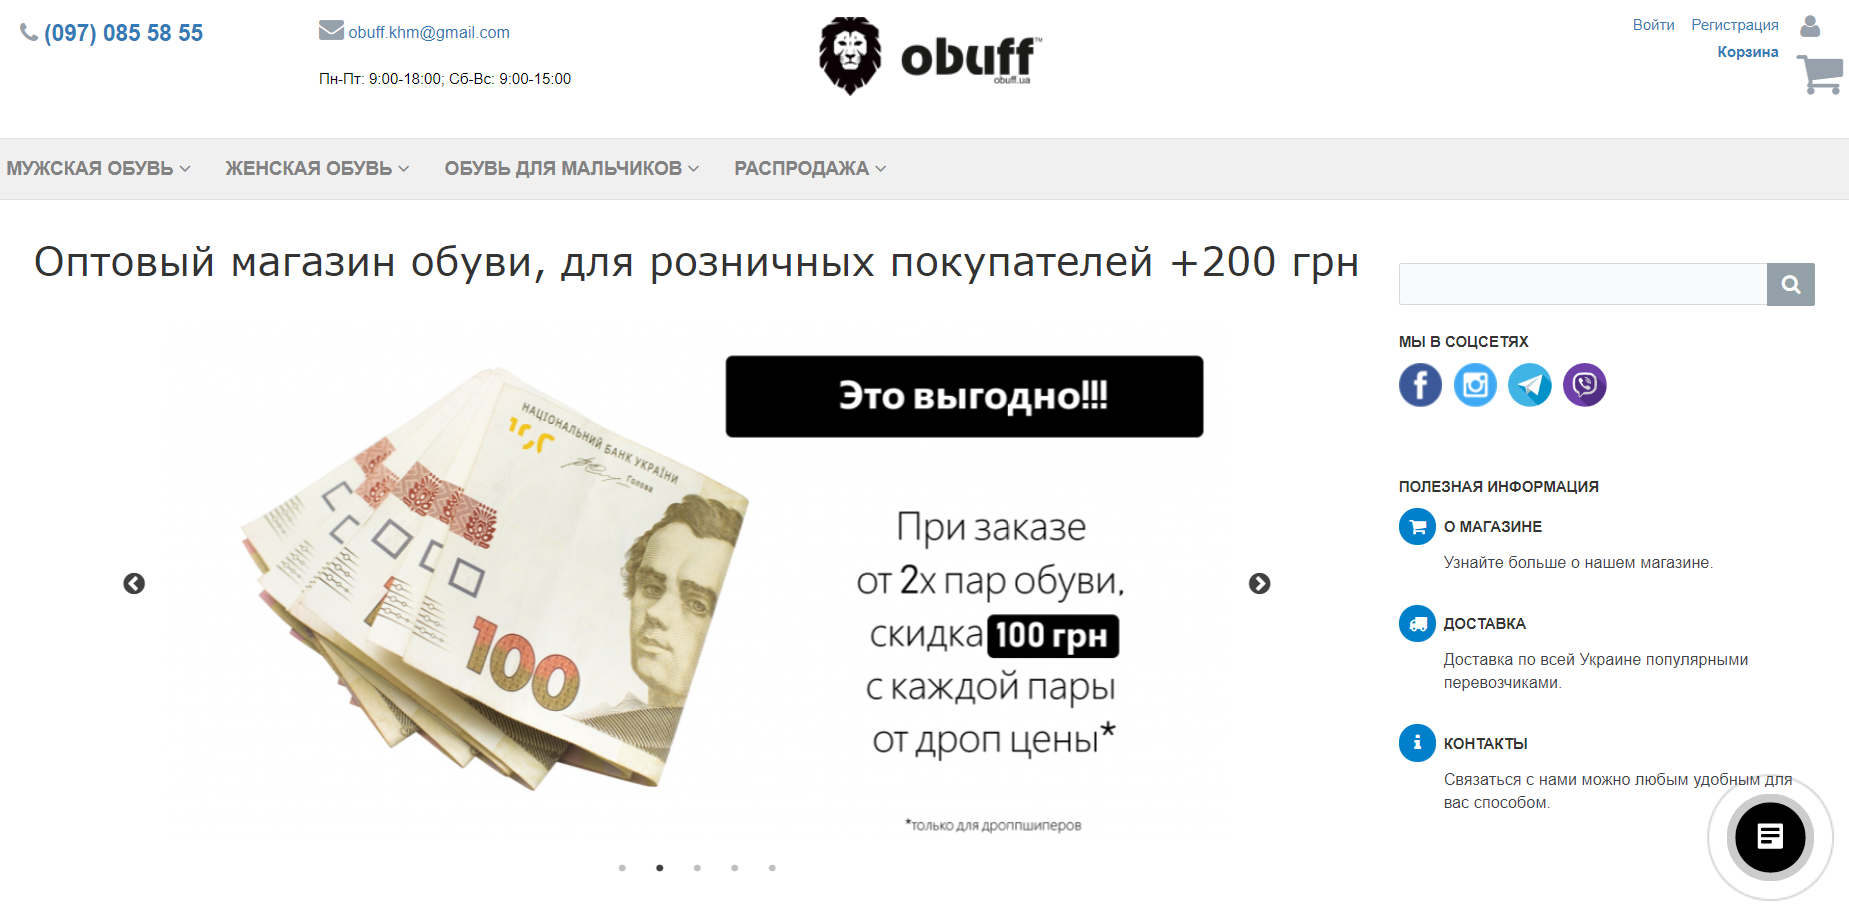 Интернет-магазин Obuff.ua 